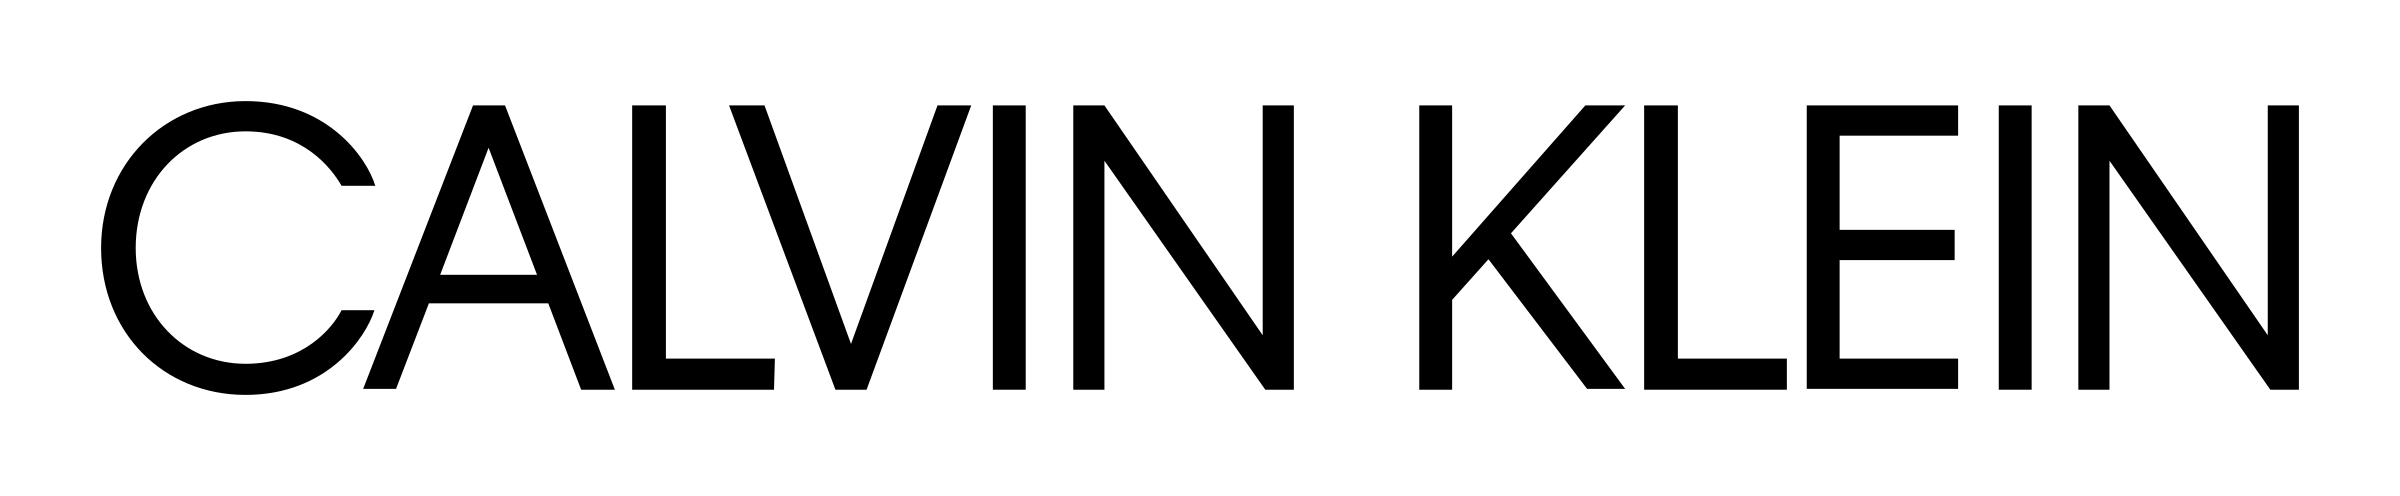 calvin klein logo.png